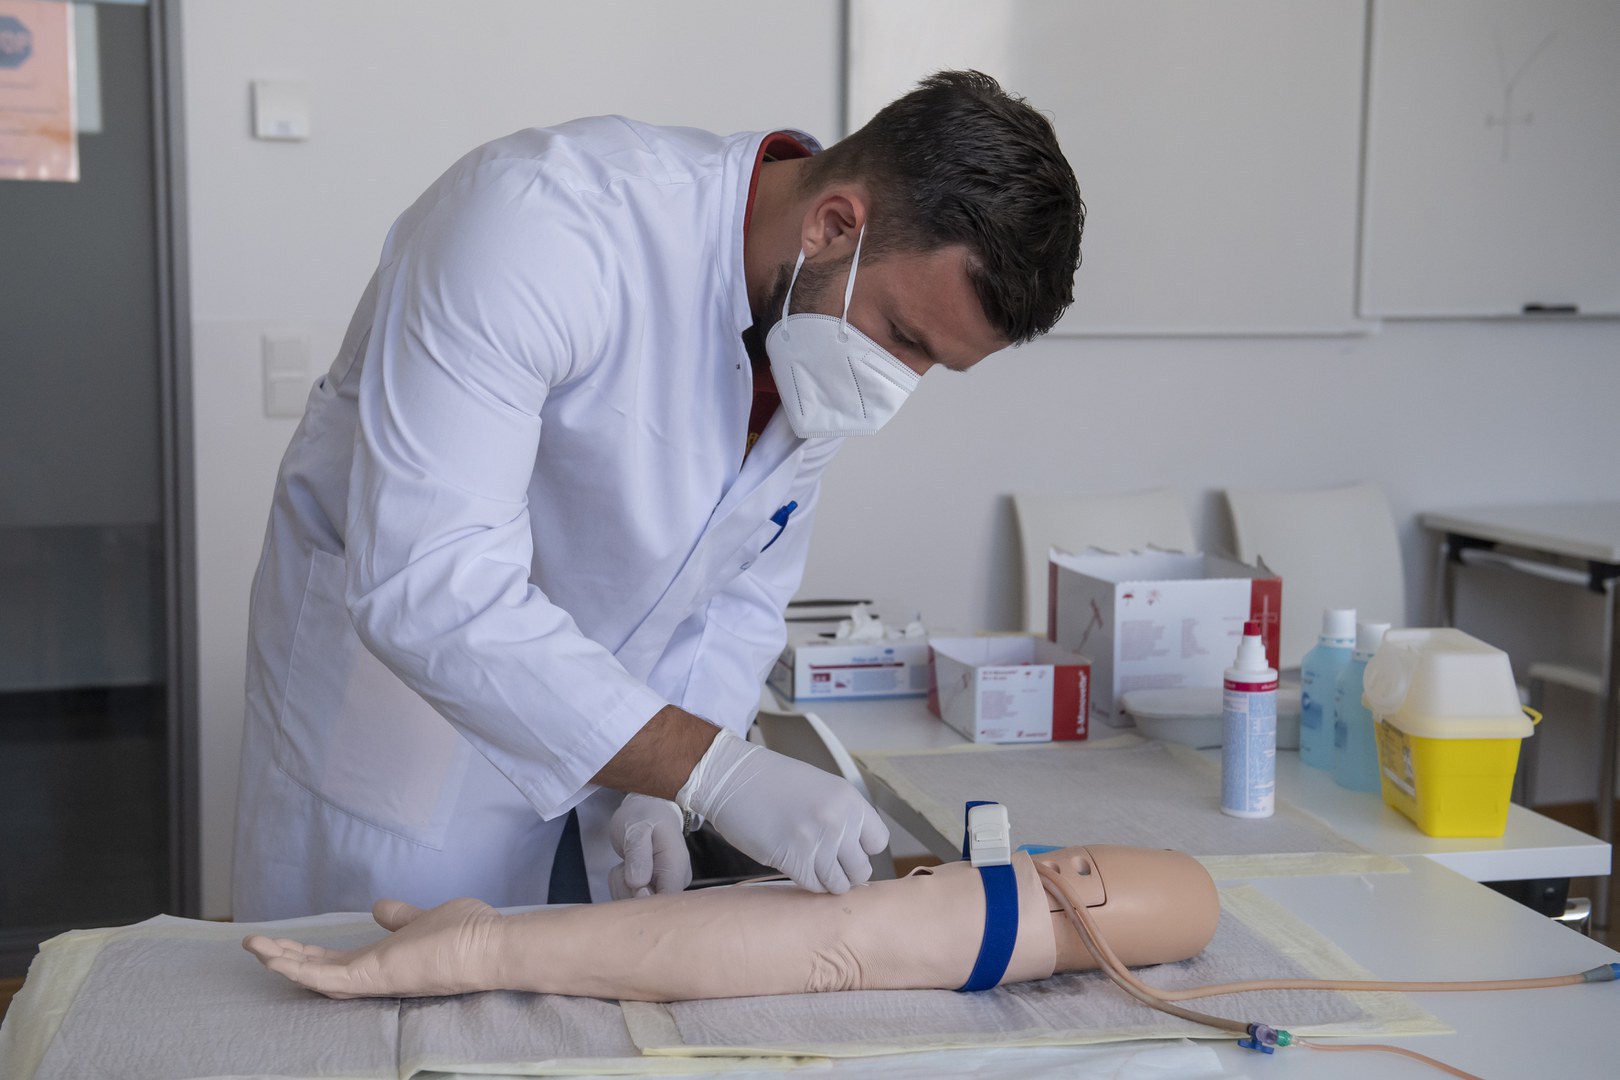 Ein Medizinstudent untersucht während der Prüfung einen Arm